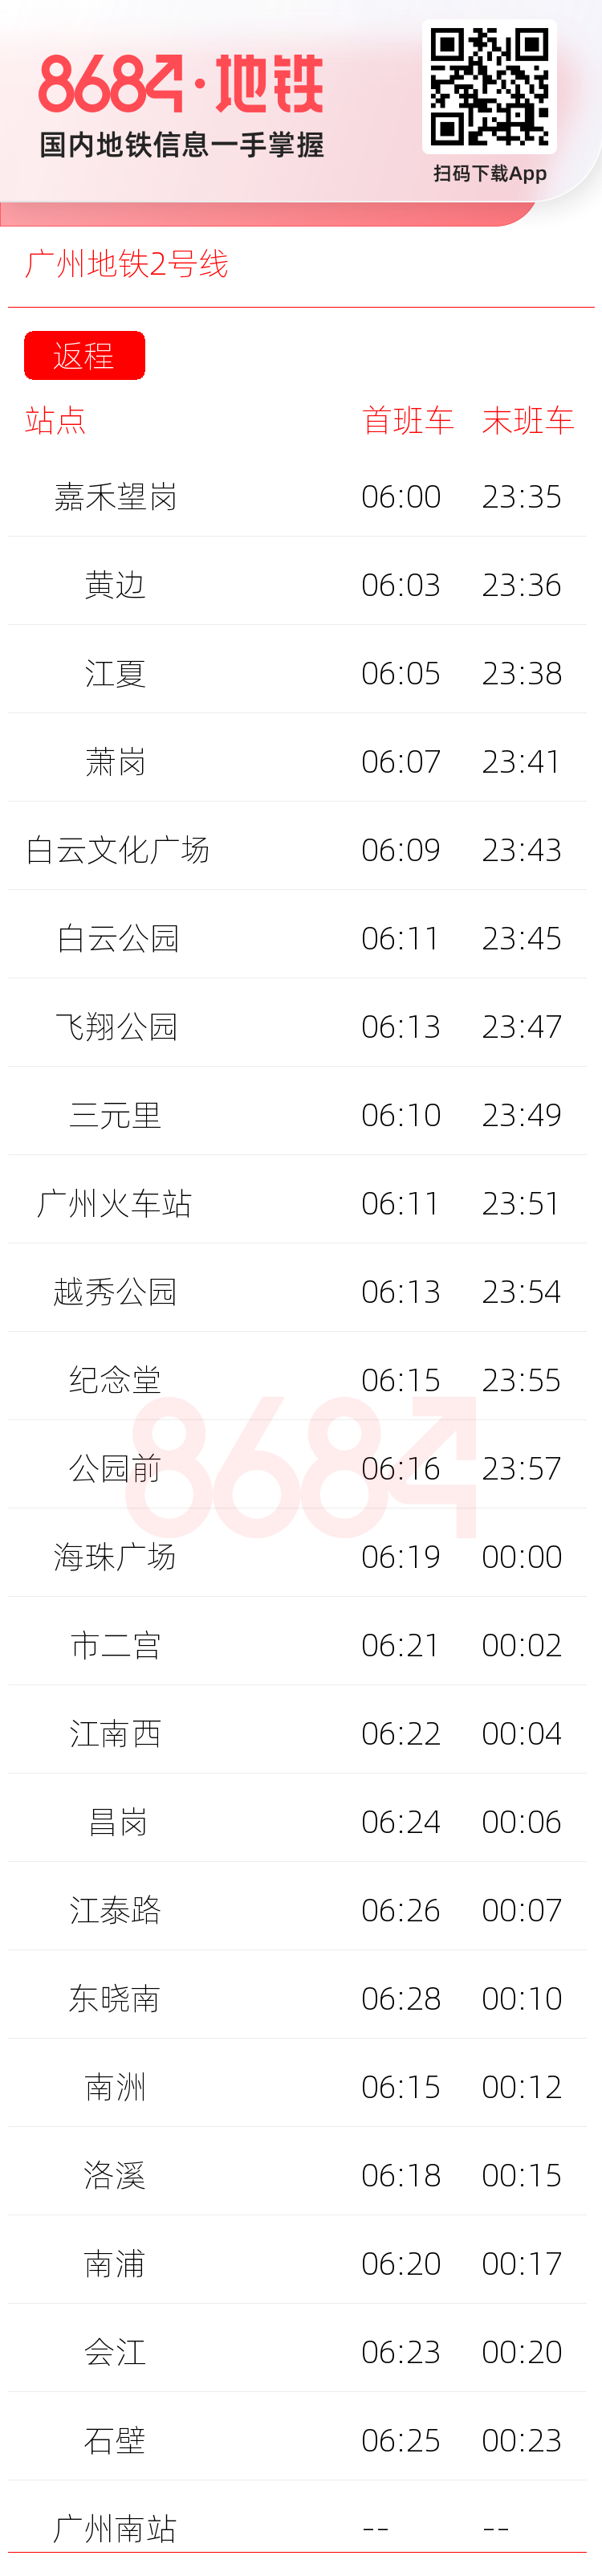 广州地铁2号线运营时间表